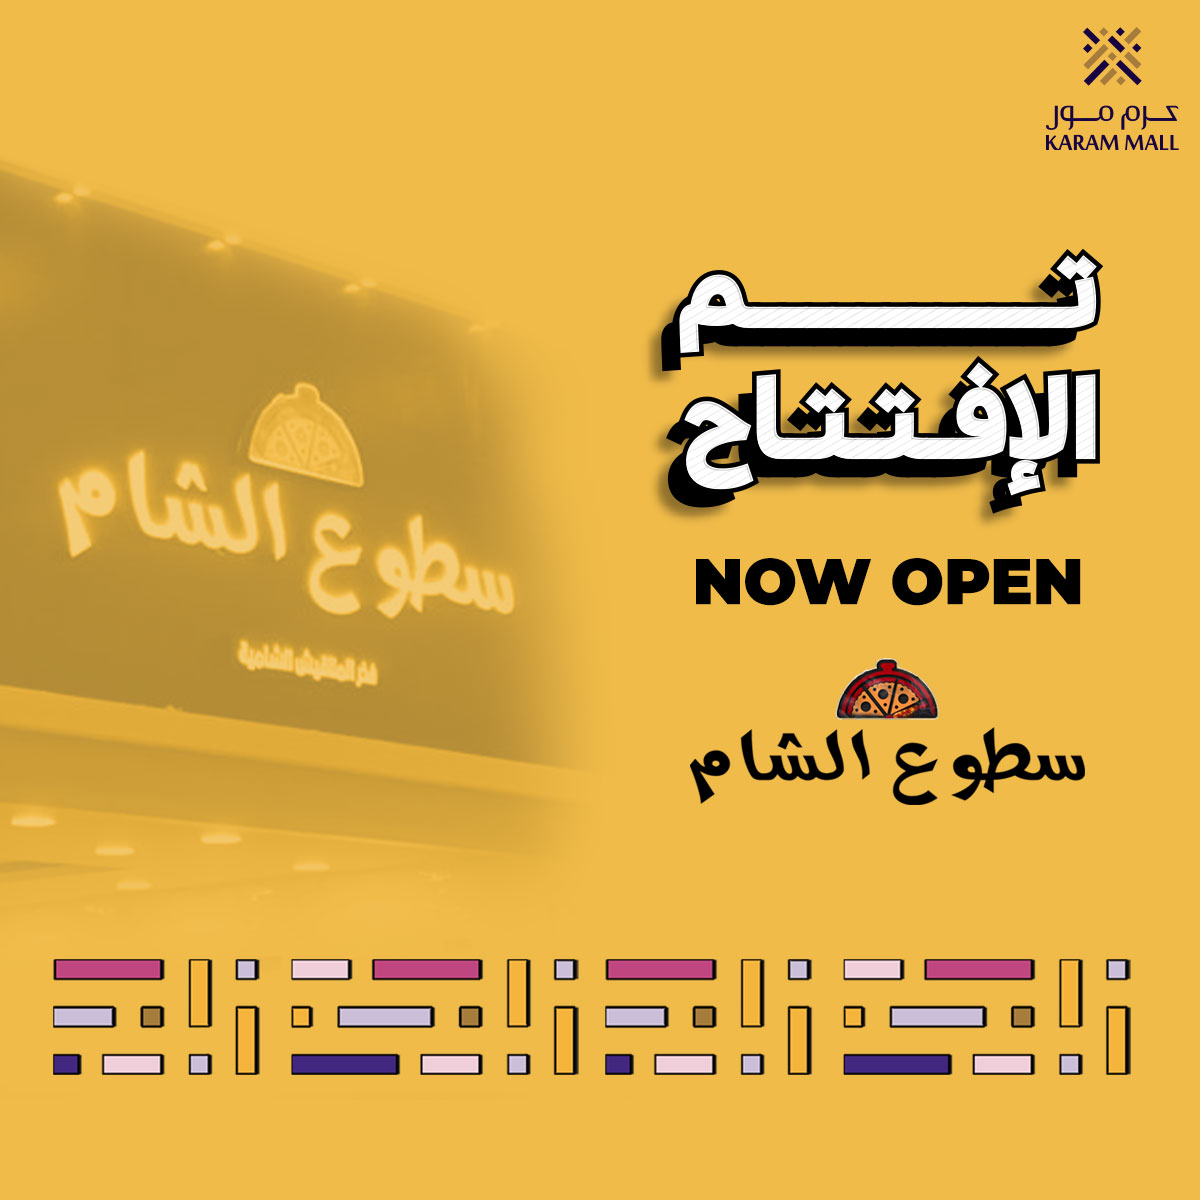 تم افتتاح مطعم سطوع الشام